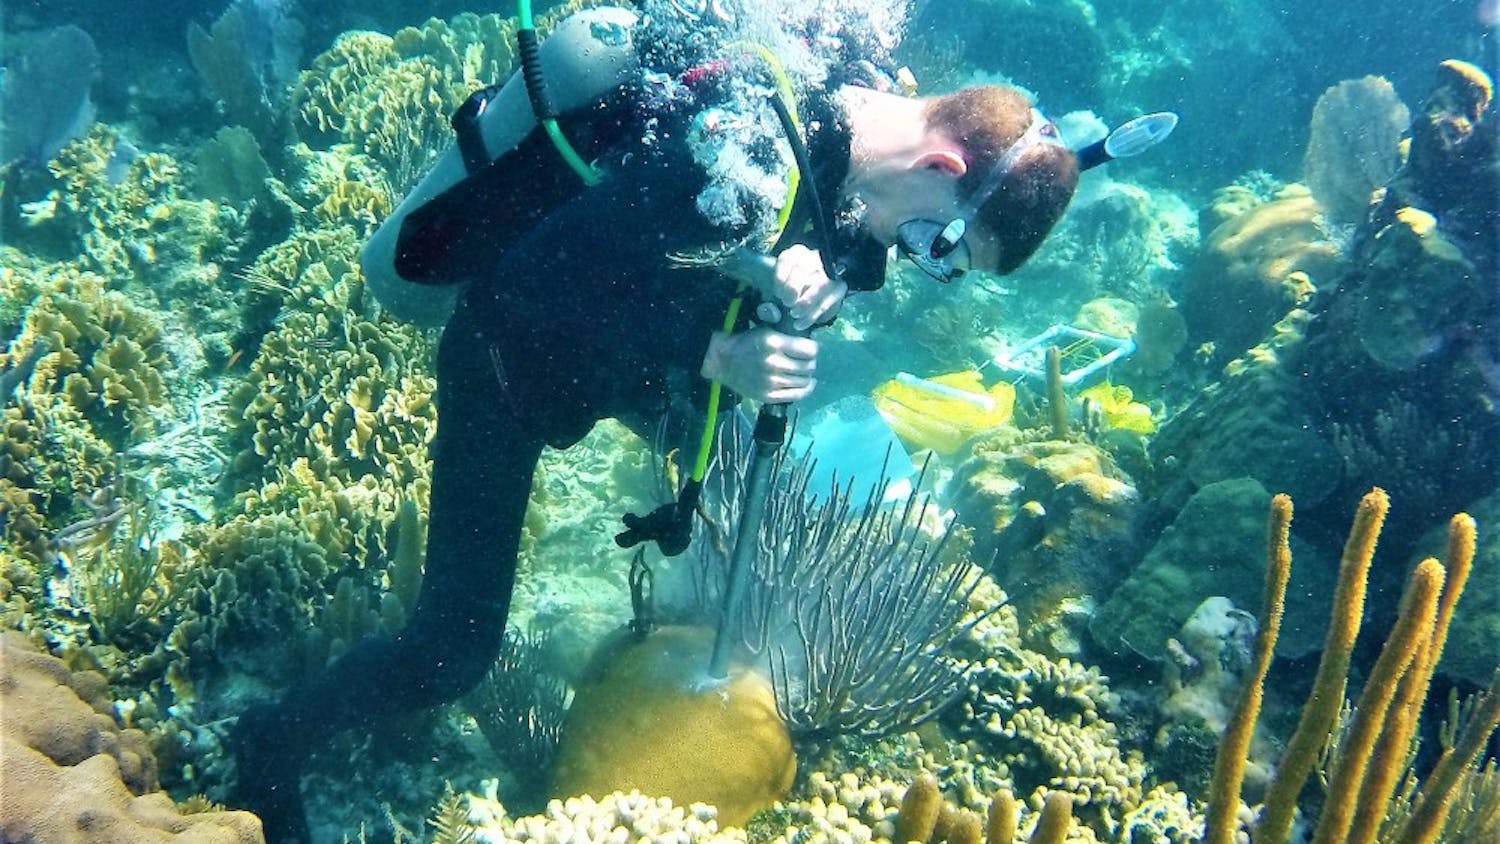 Justin Baumann drills a coral core in Belize. Photo by Hannah Aichelman.